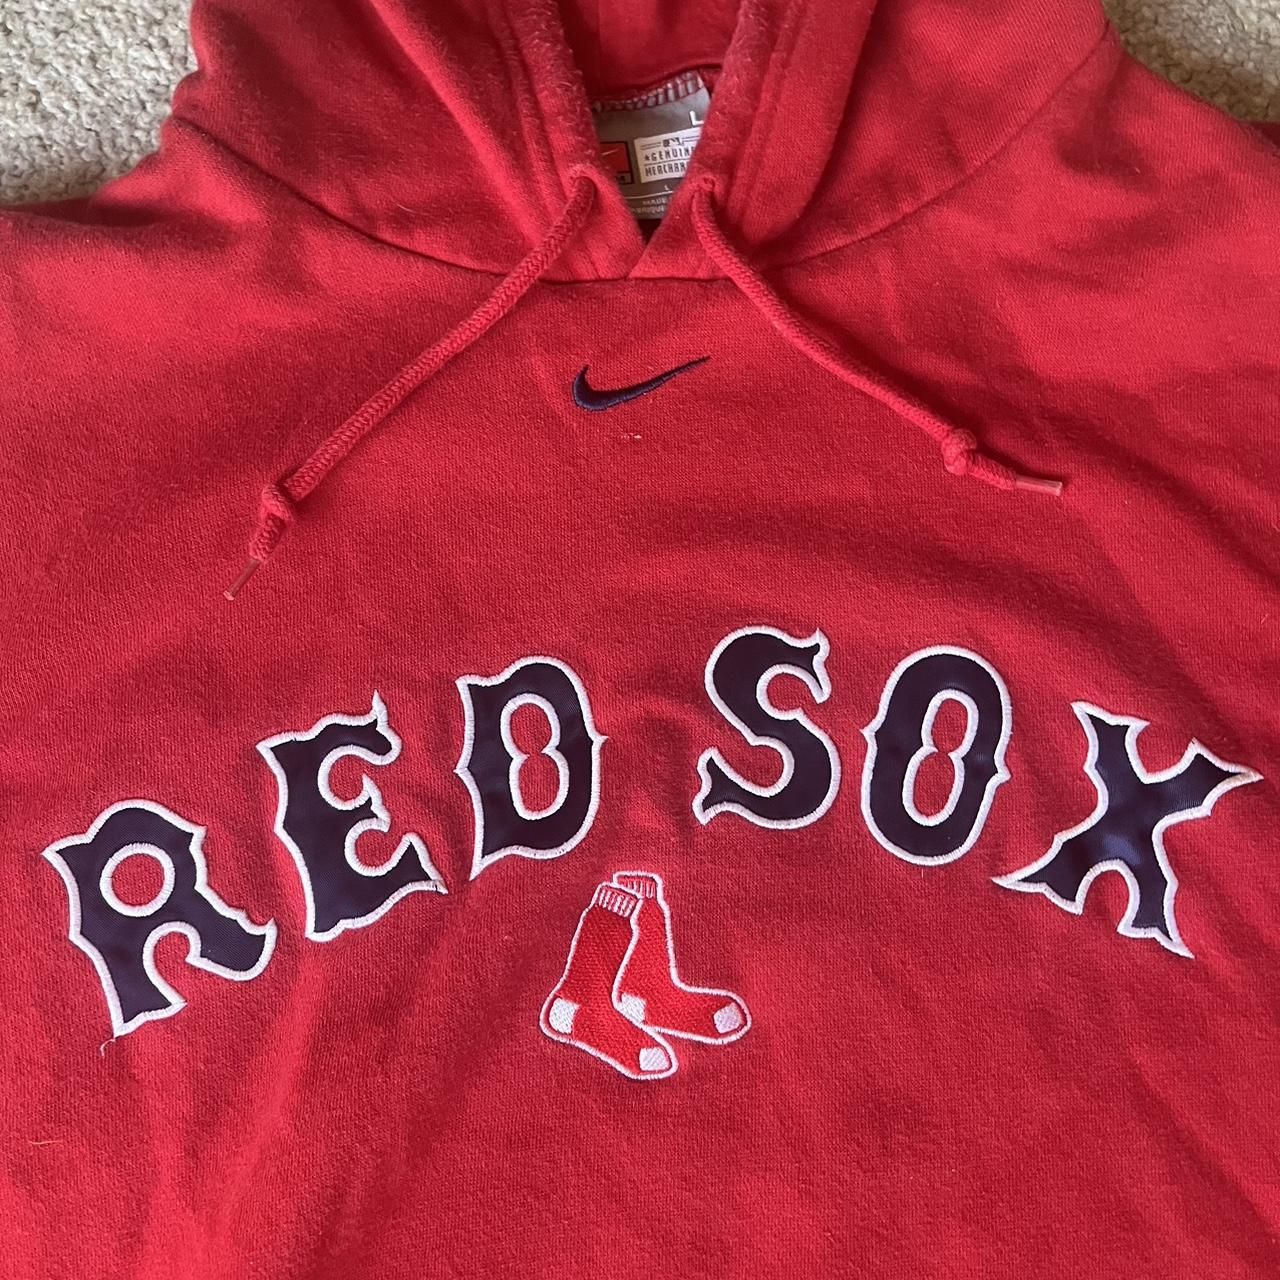 Boston Red Sox Nike Centerswoosh Hoodie. This item - Depop